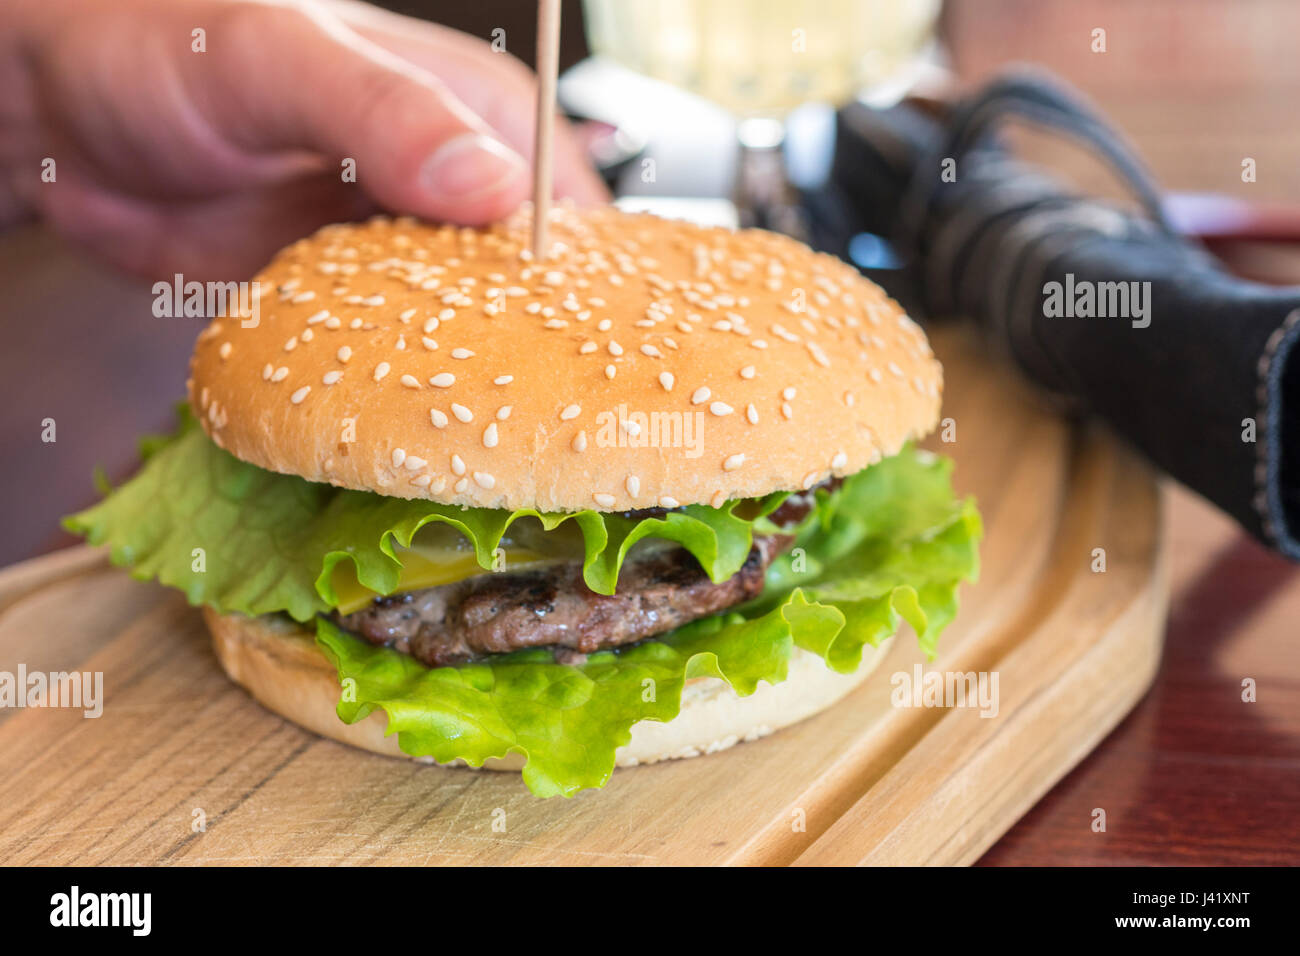 Frais délicieux Hamburger Cheeseburger avec burger de boeuf grillé, du fromage sur une table in restaurant Banque D'Images